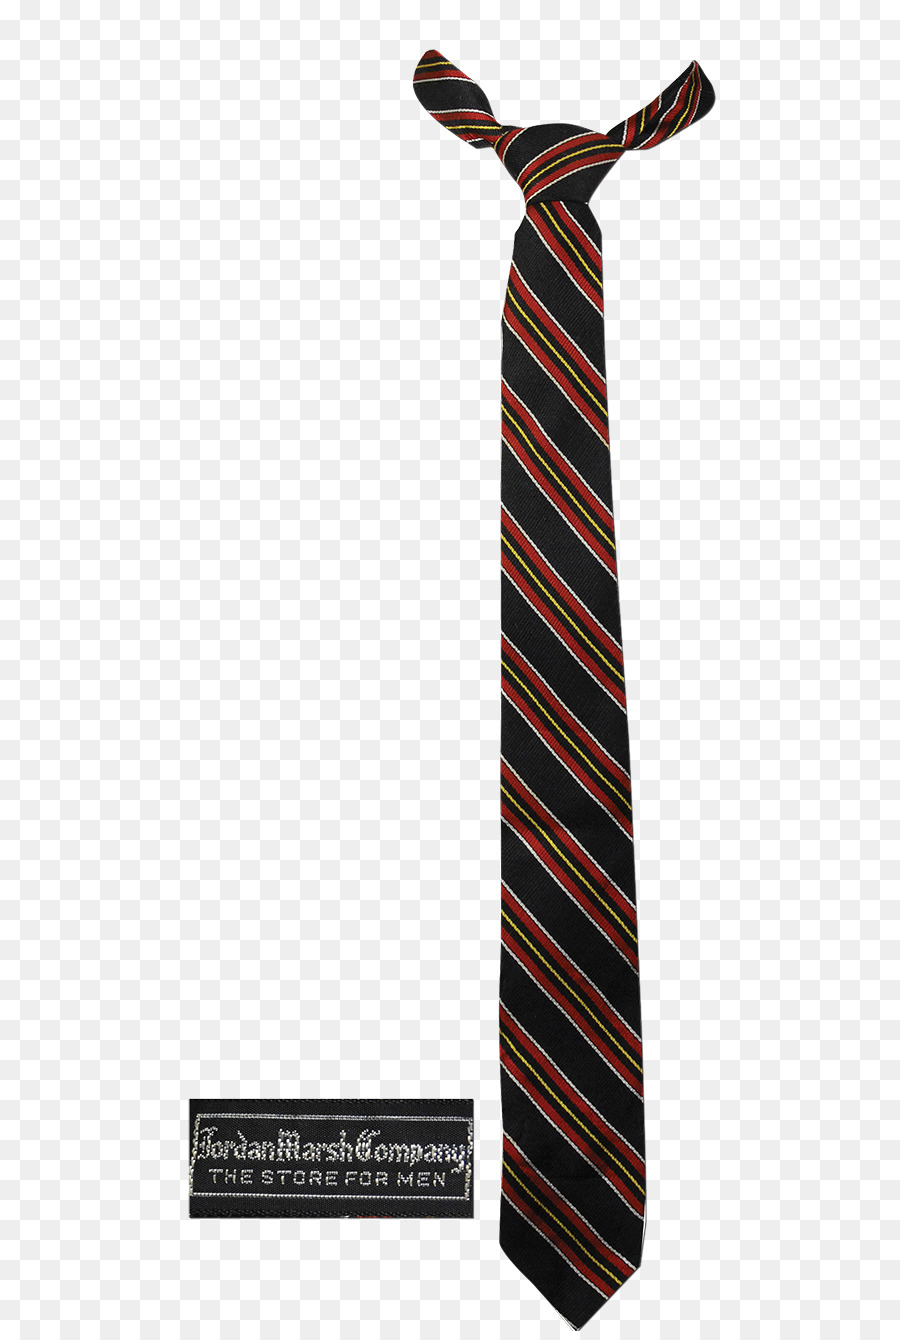 Necktie Clip art - Tie PNG Clipart png download - 600*1331 - Free Transparent Necktie png Download.